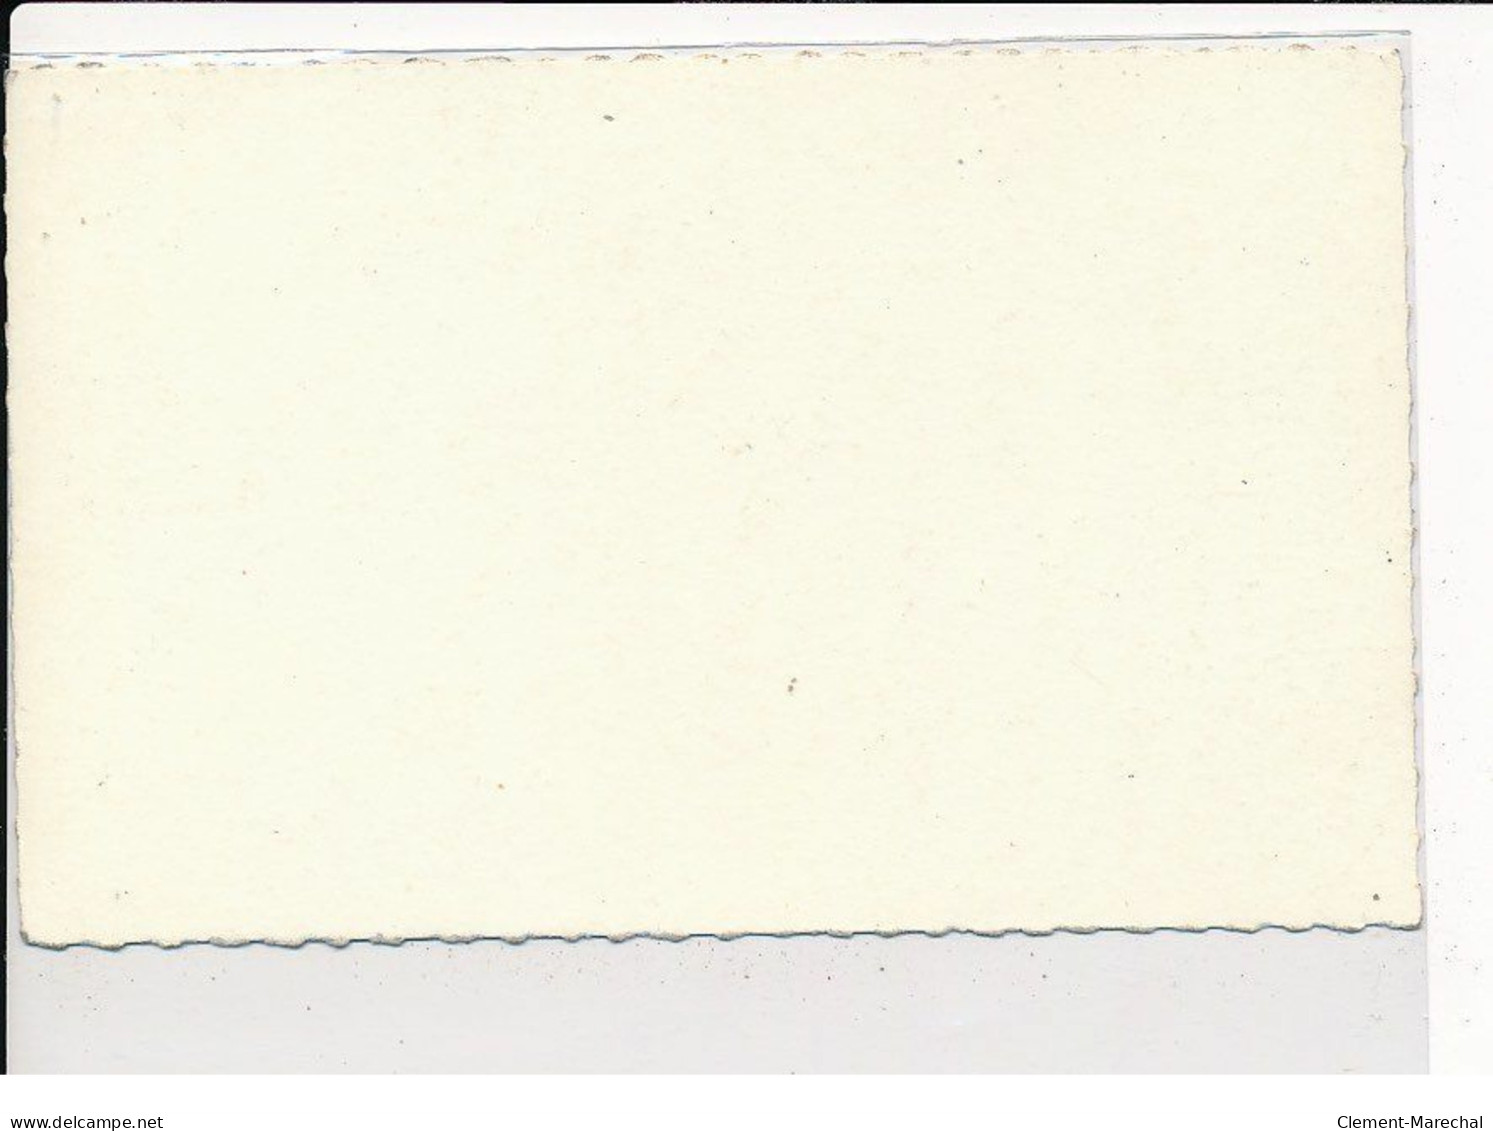 Autographe De Eddy Mitchell, Chanteur - Très Bon état - Autres & Non Classés